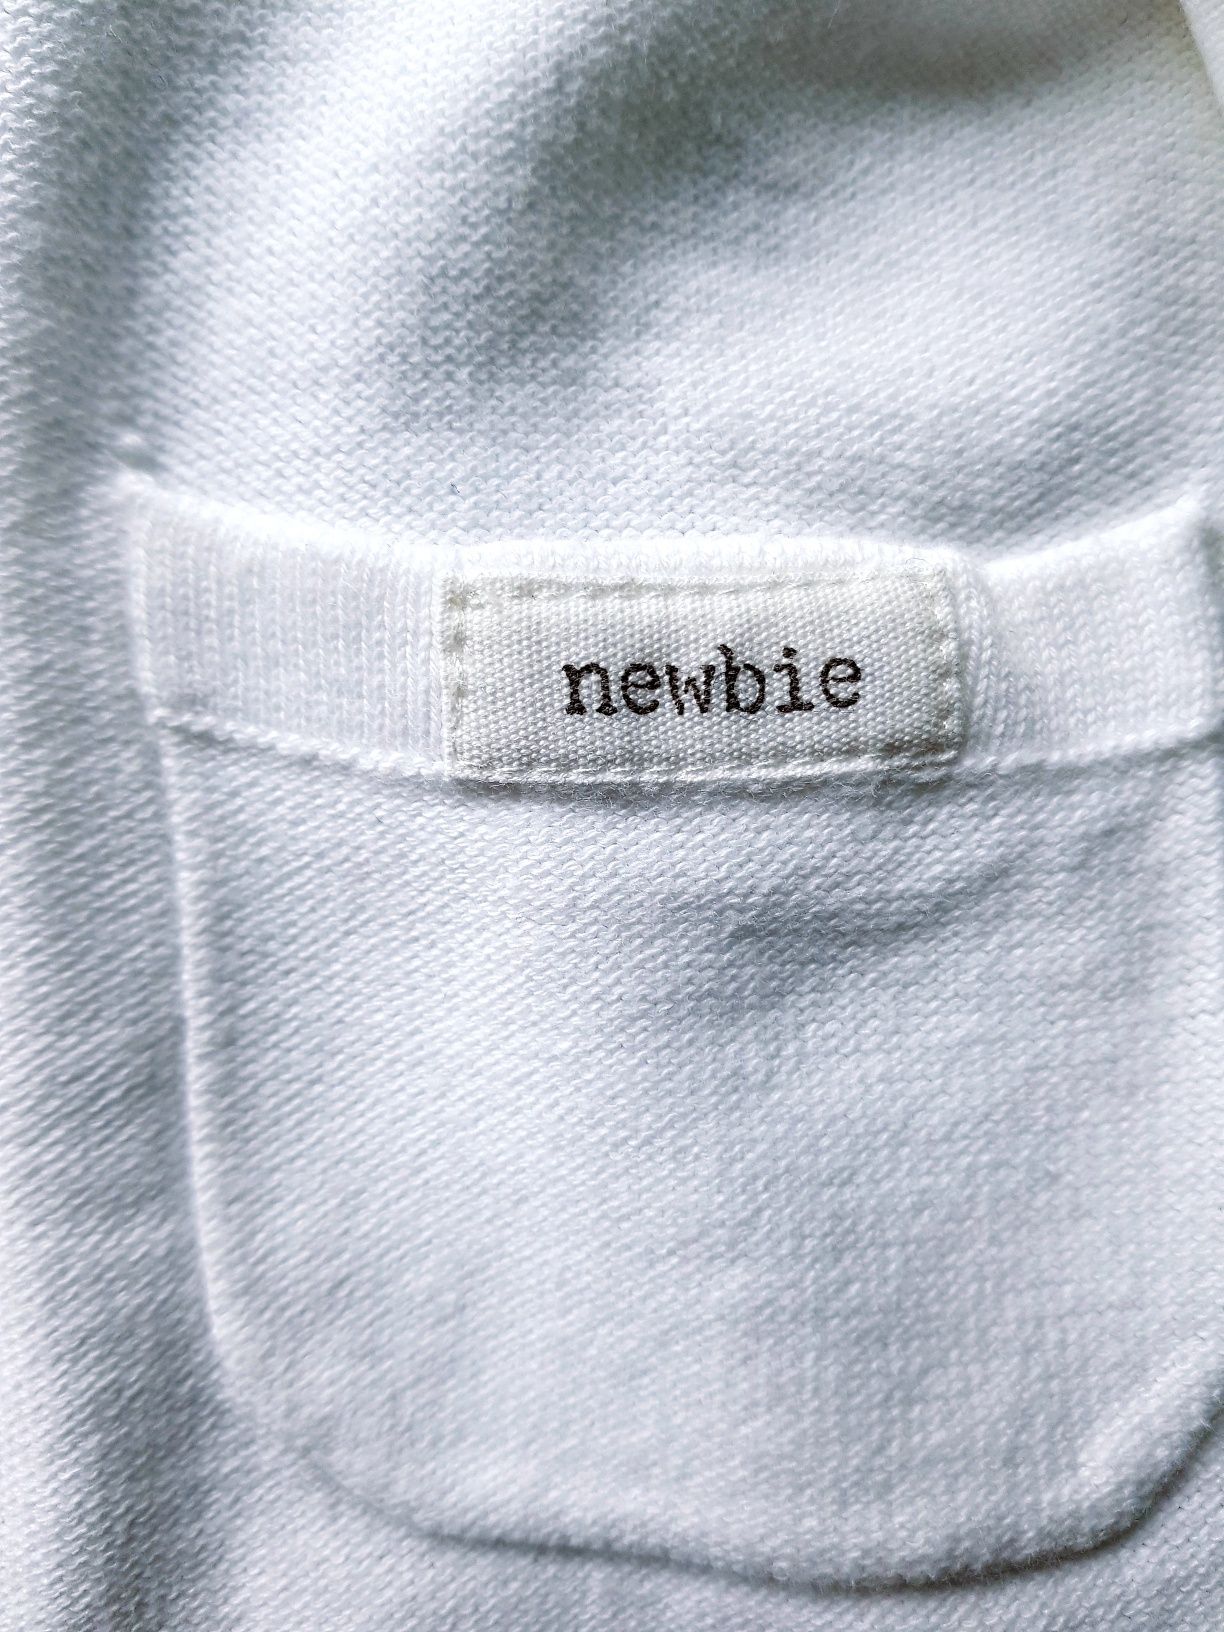 Newbie Nowy sweterek to 86 dla dziewczynki lub chlopca.